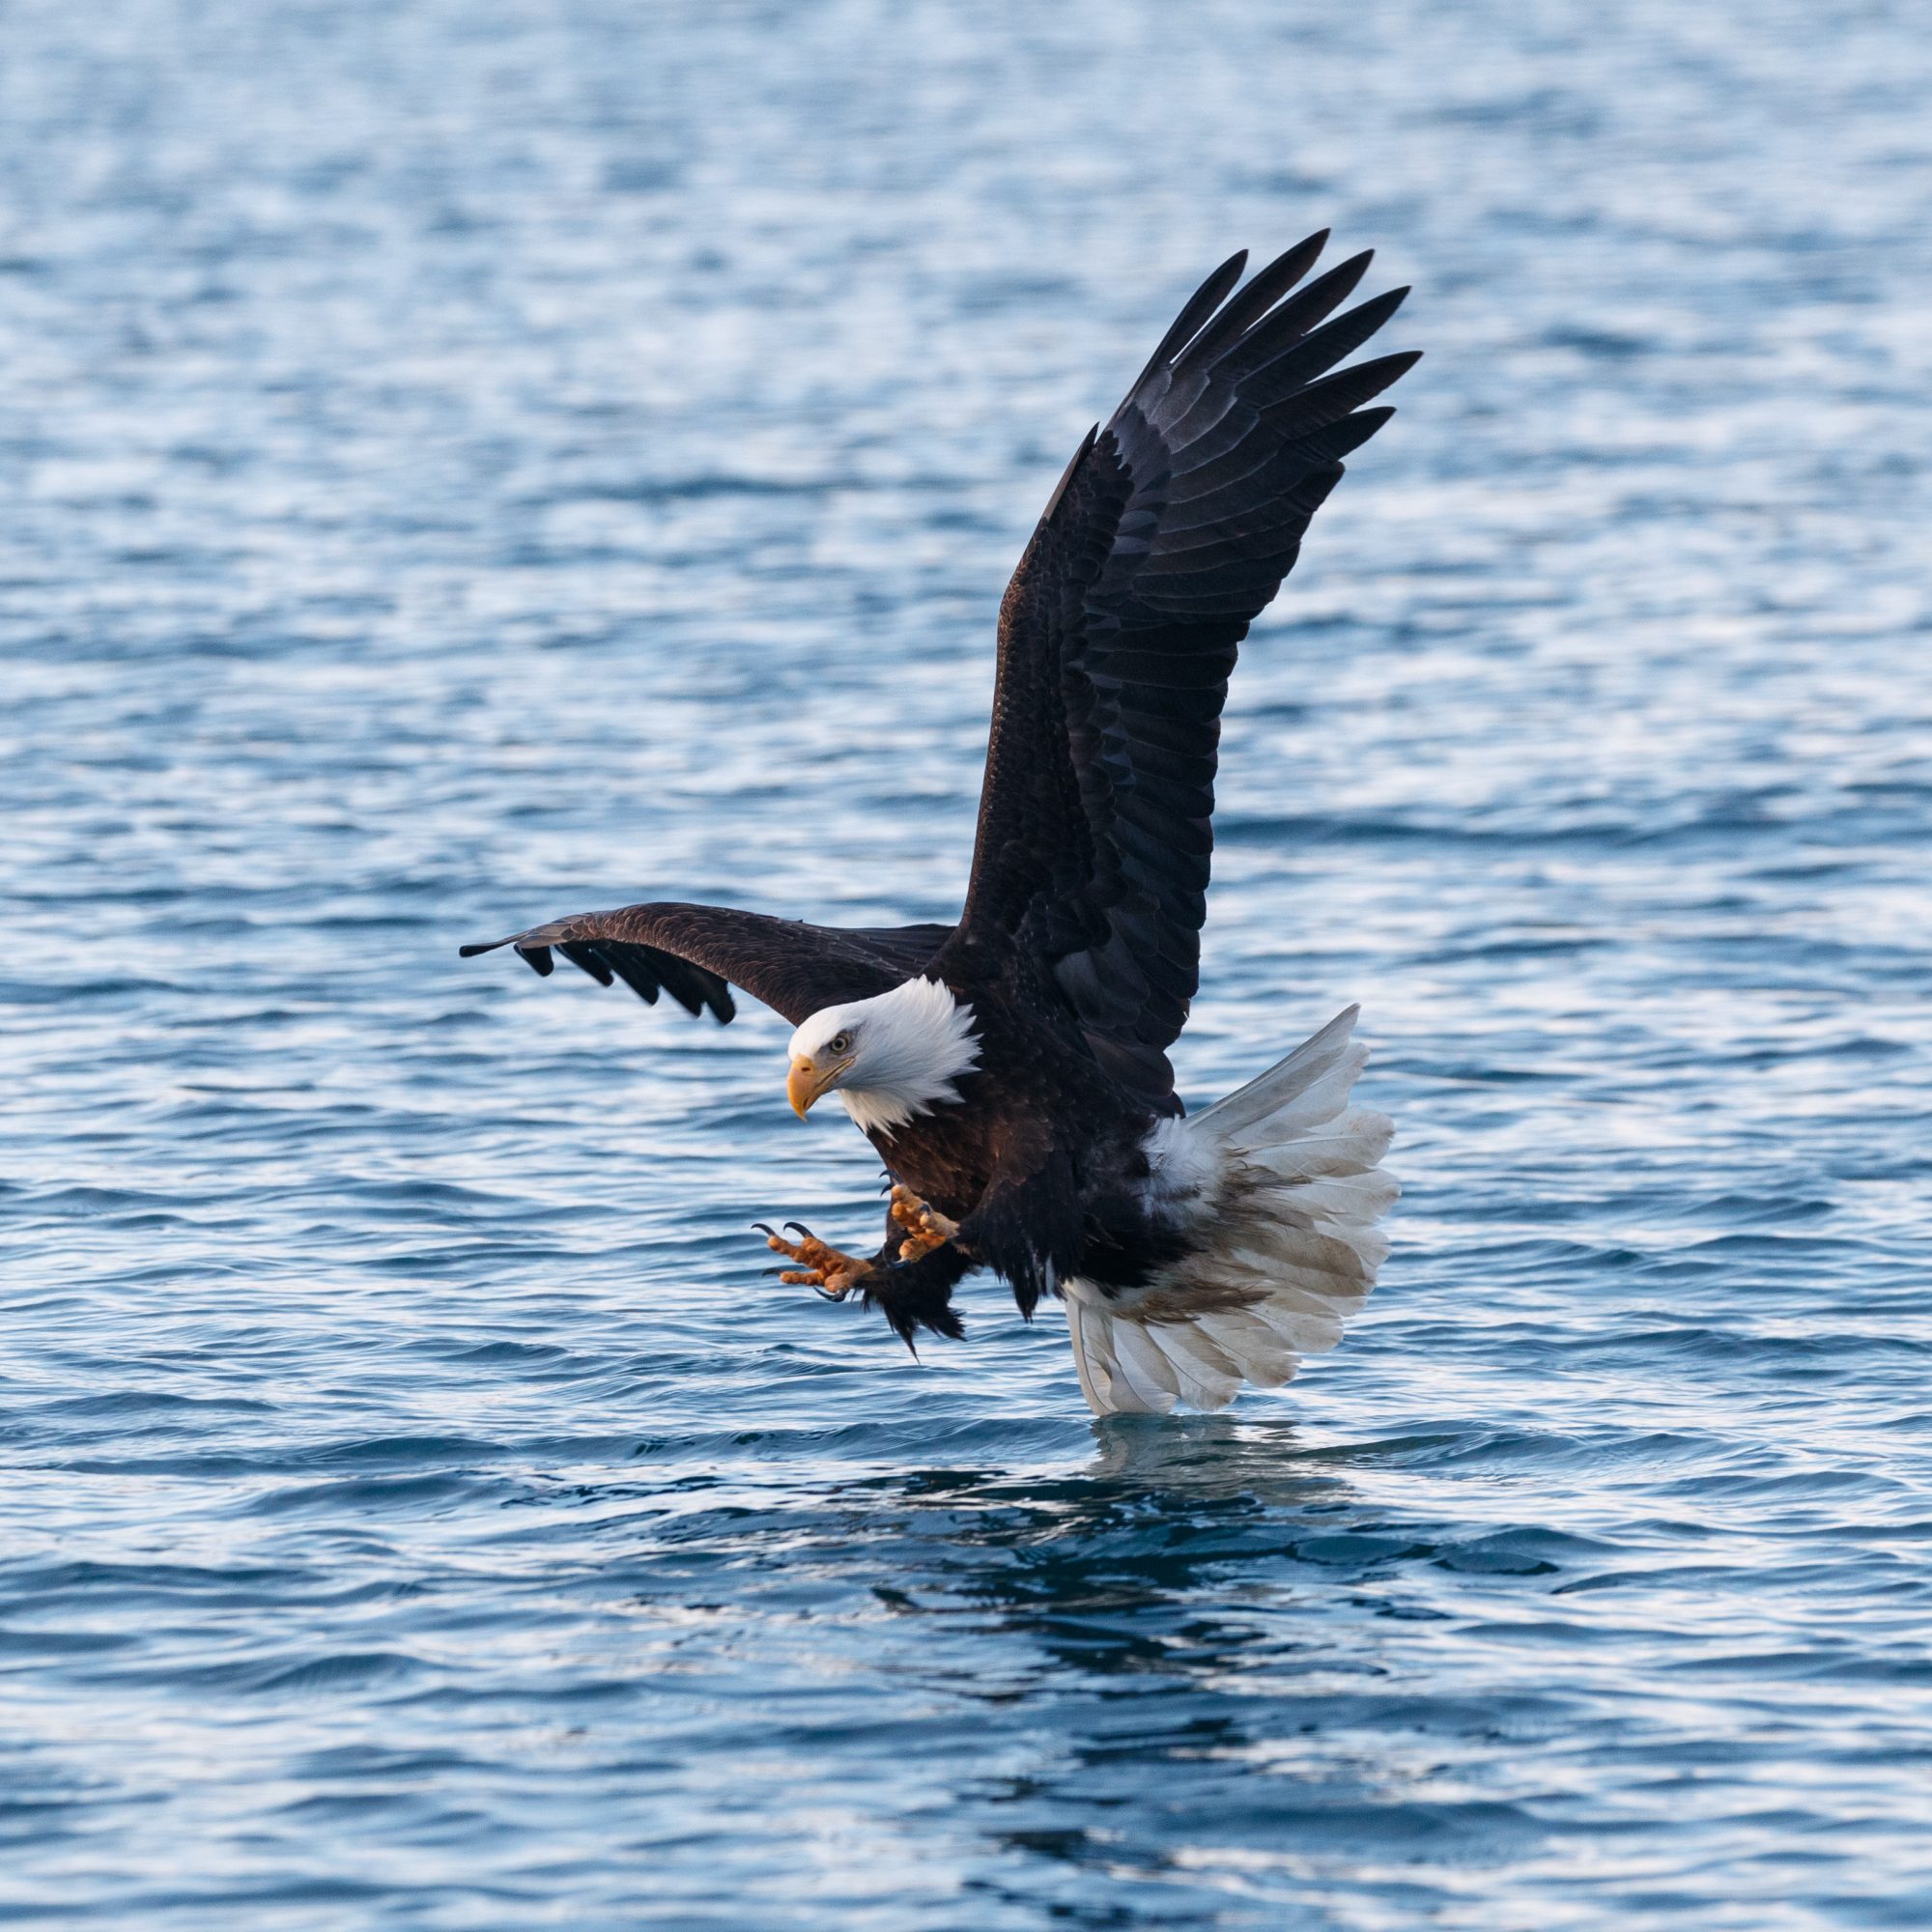 Bald Eagles fishing – Alaska 2020